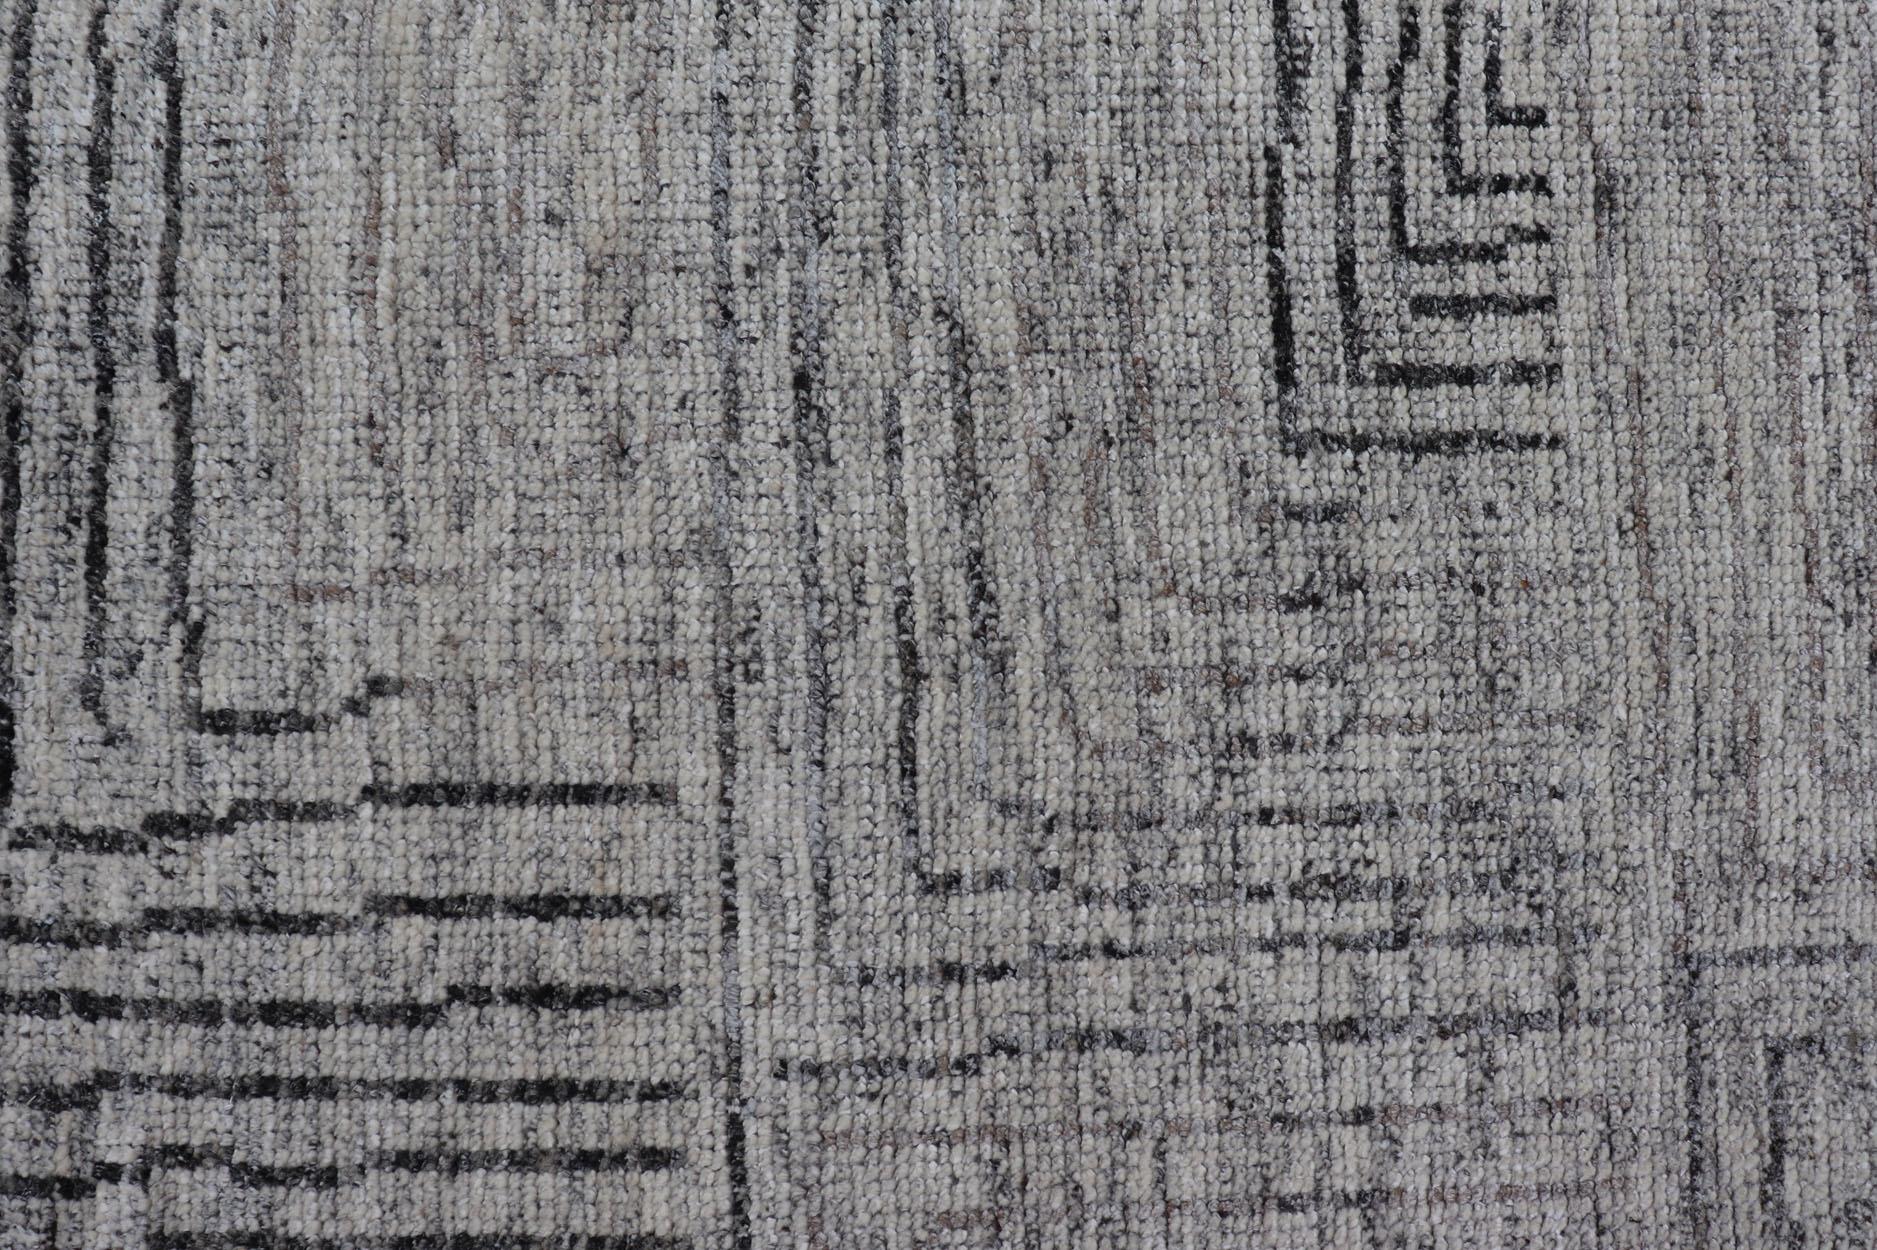 Maße 6 x 8'8 

Dieser moderne Teppich zeichnet sich durch verschiedene Grautöne im Feld aus, die neutrale Farben zu einer nahezu homogenen Farbe verschmelzen. Das schlichte Design mit Ranken auf dem ganzen Feld ist in einem dunklen Grau gehalten.